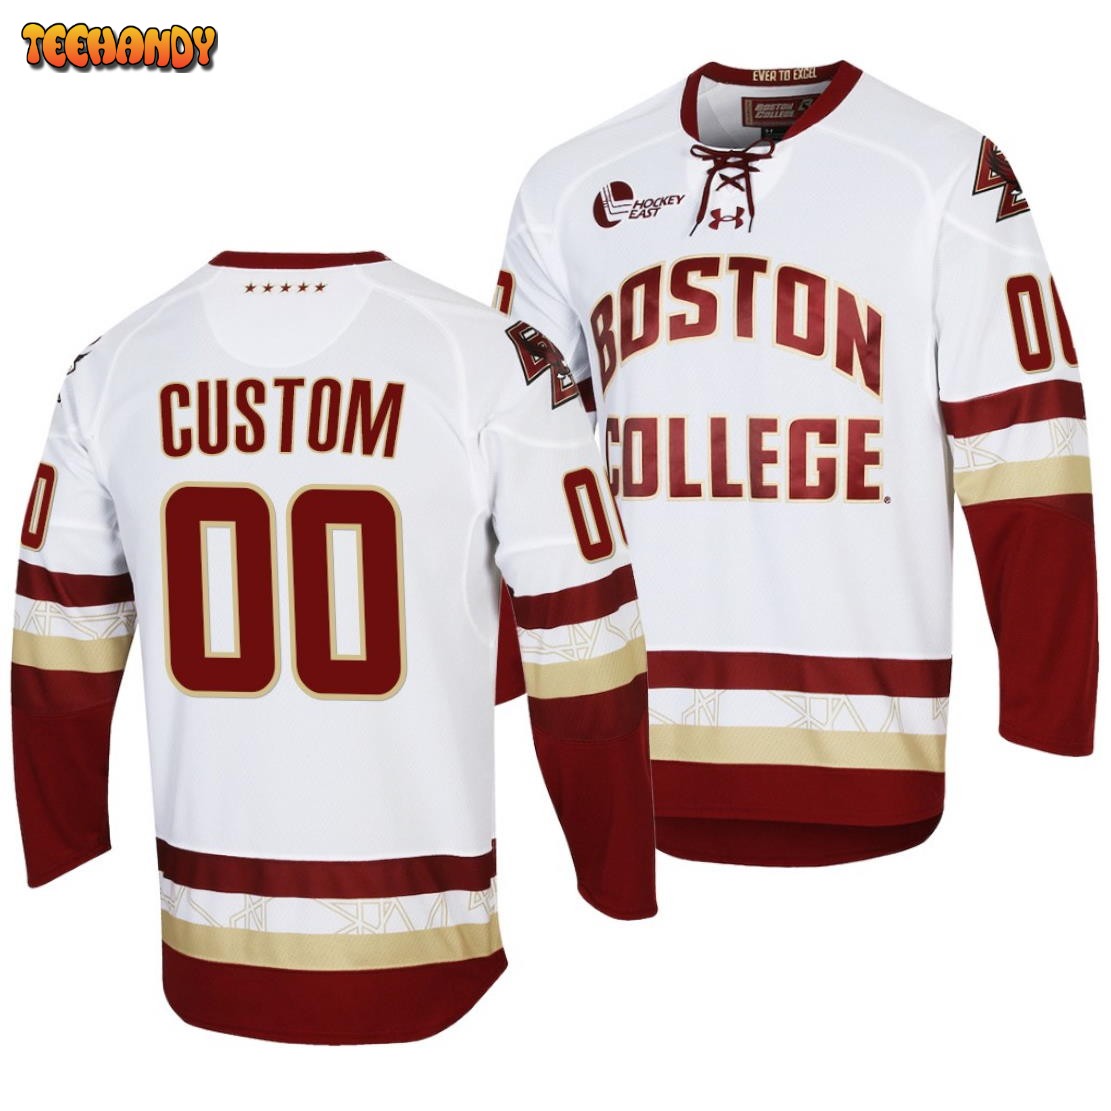 Boston College Eagles Custom College Hockey White Replica Jersey